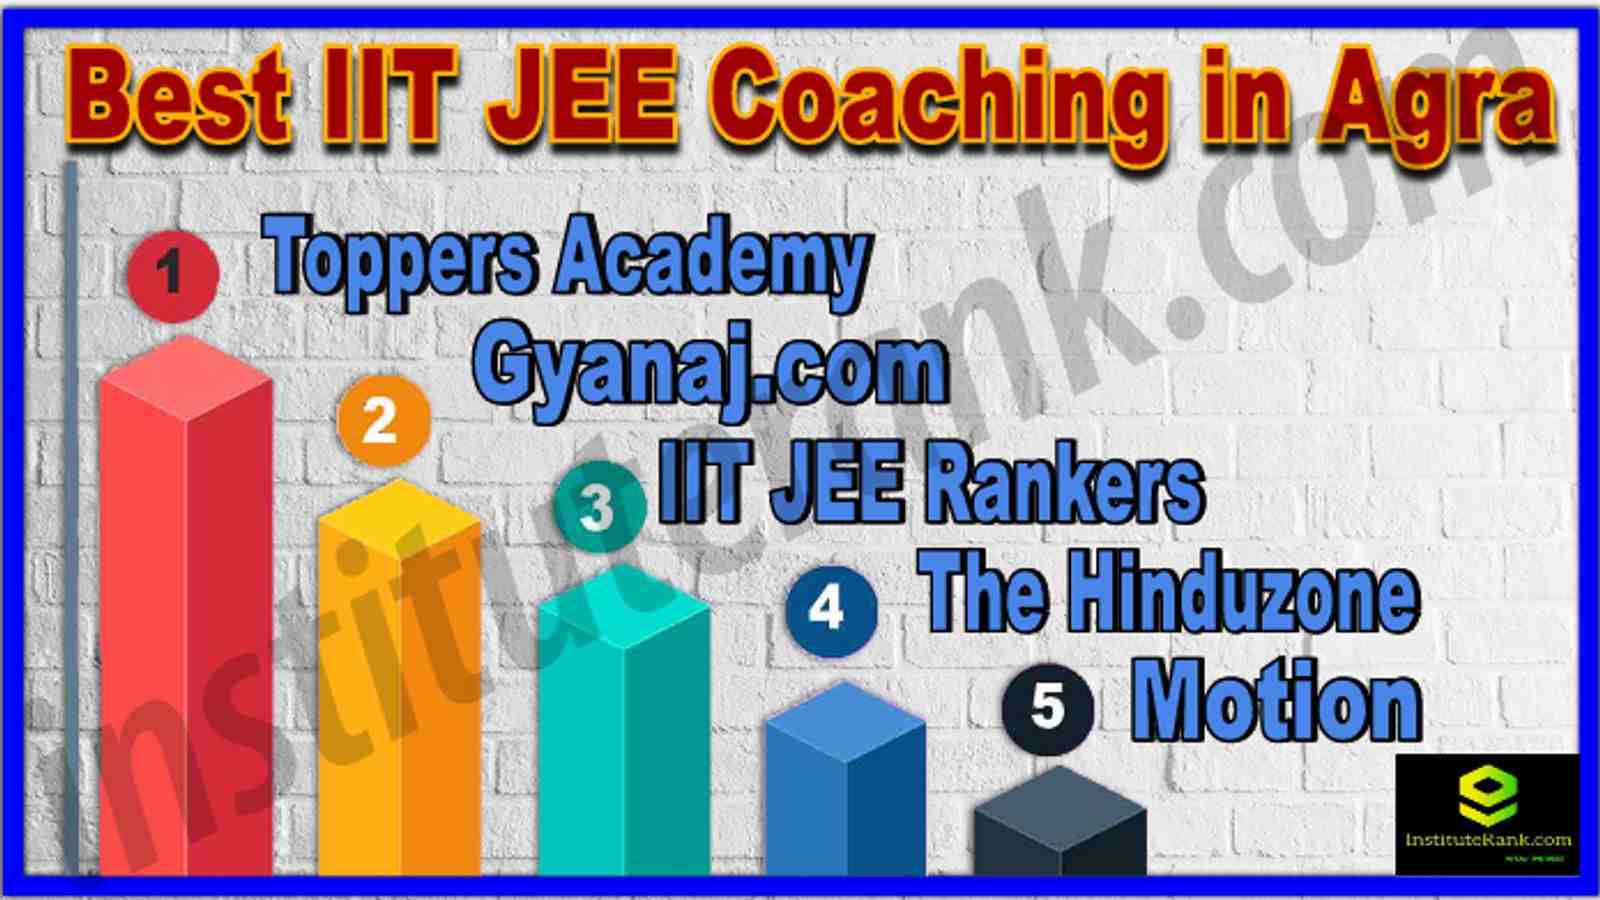 Best IIT JEE Coaching in Agra